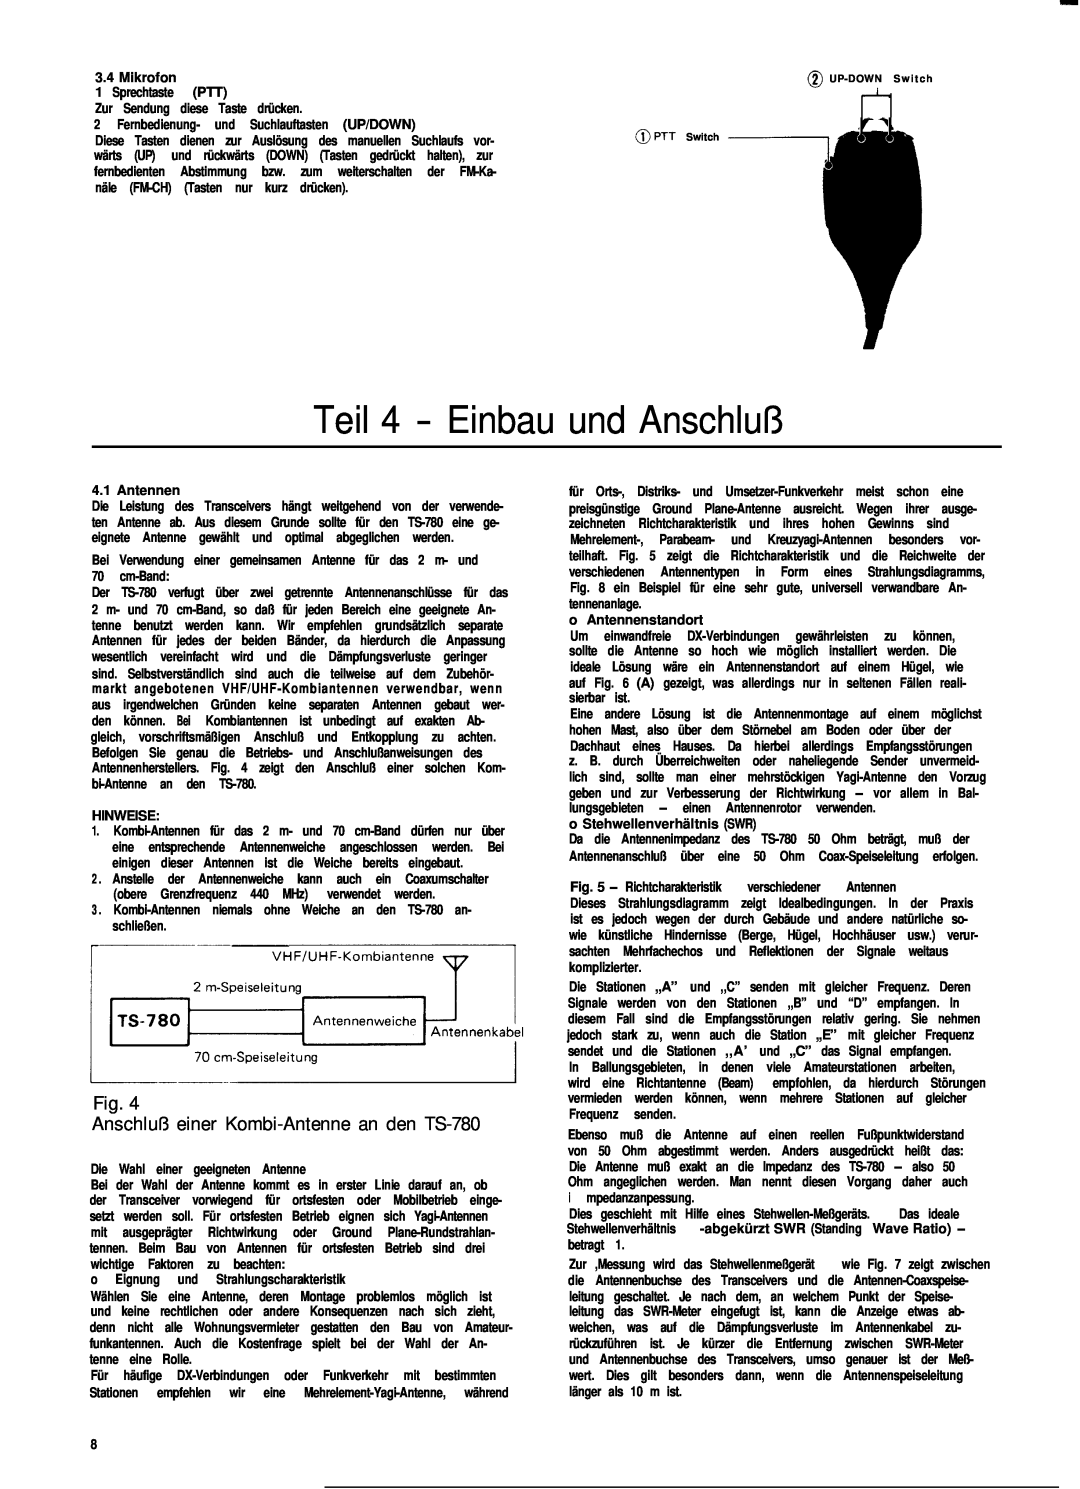 Kenwood manual Teil 4 - Einbau und Anschluß, Fig. Anschluß einer Kombi-Antennean den TS-780 